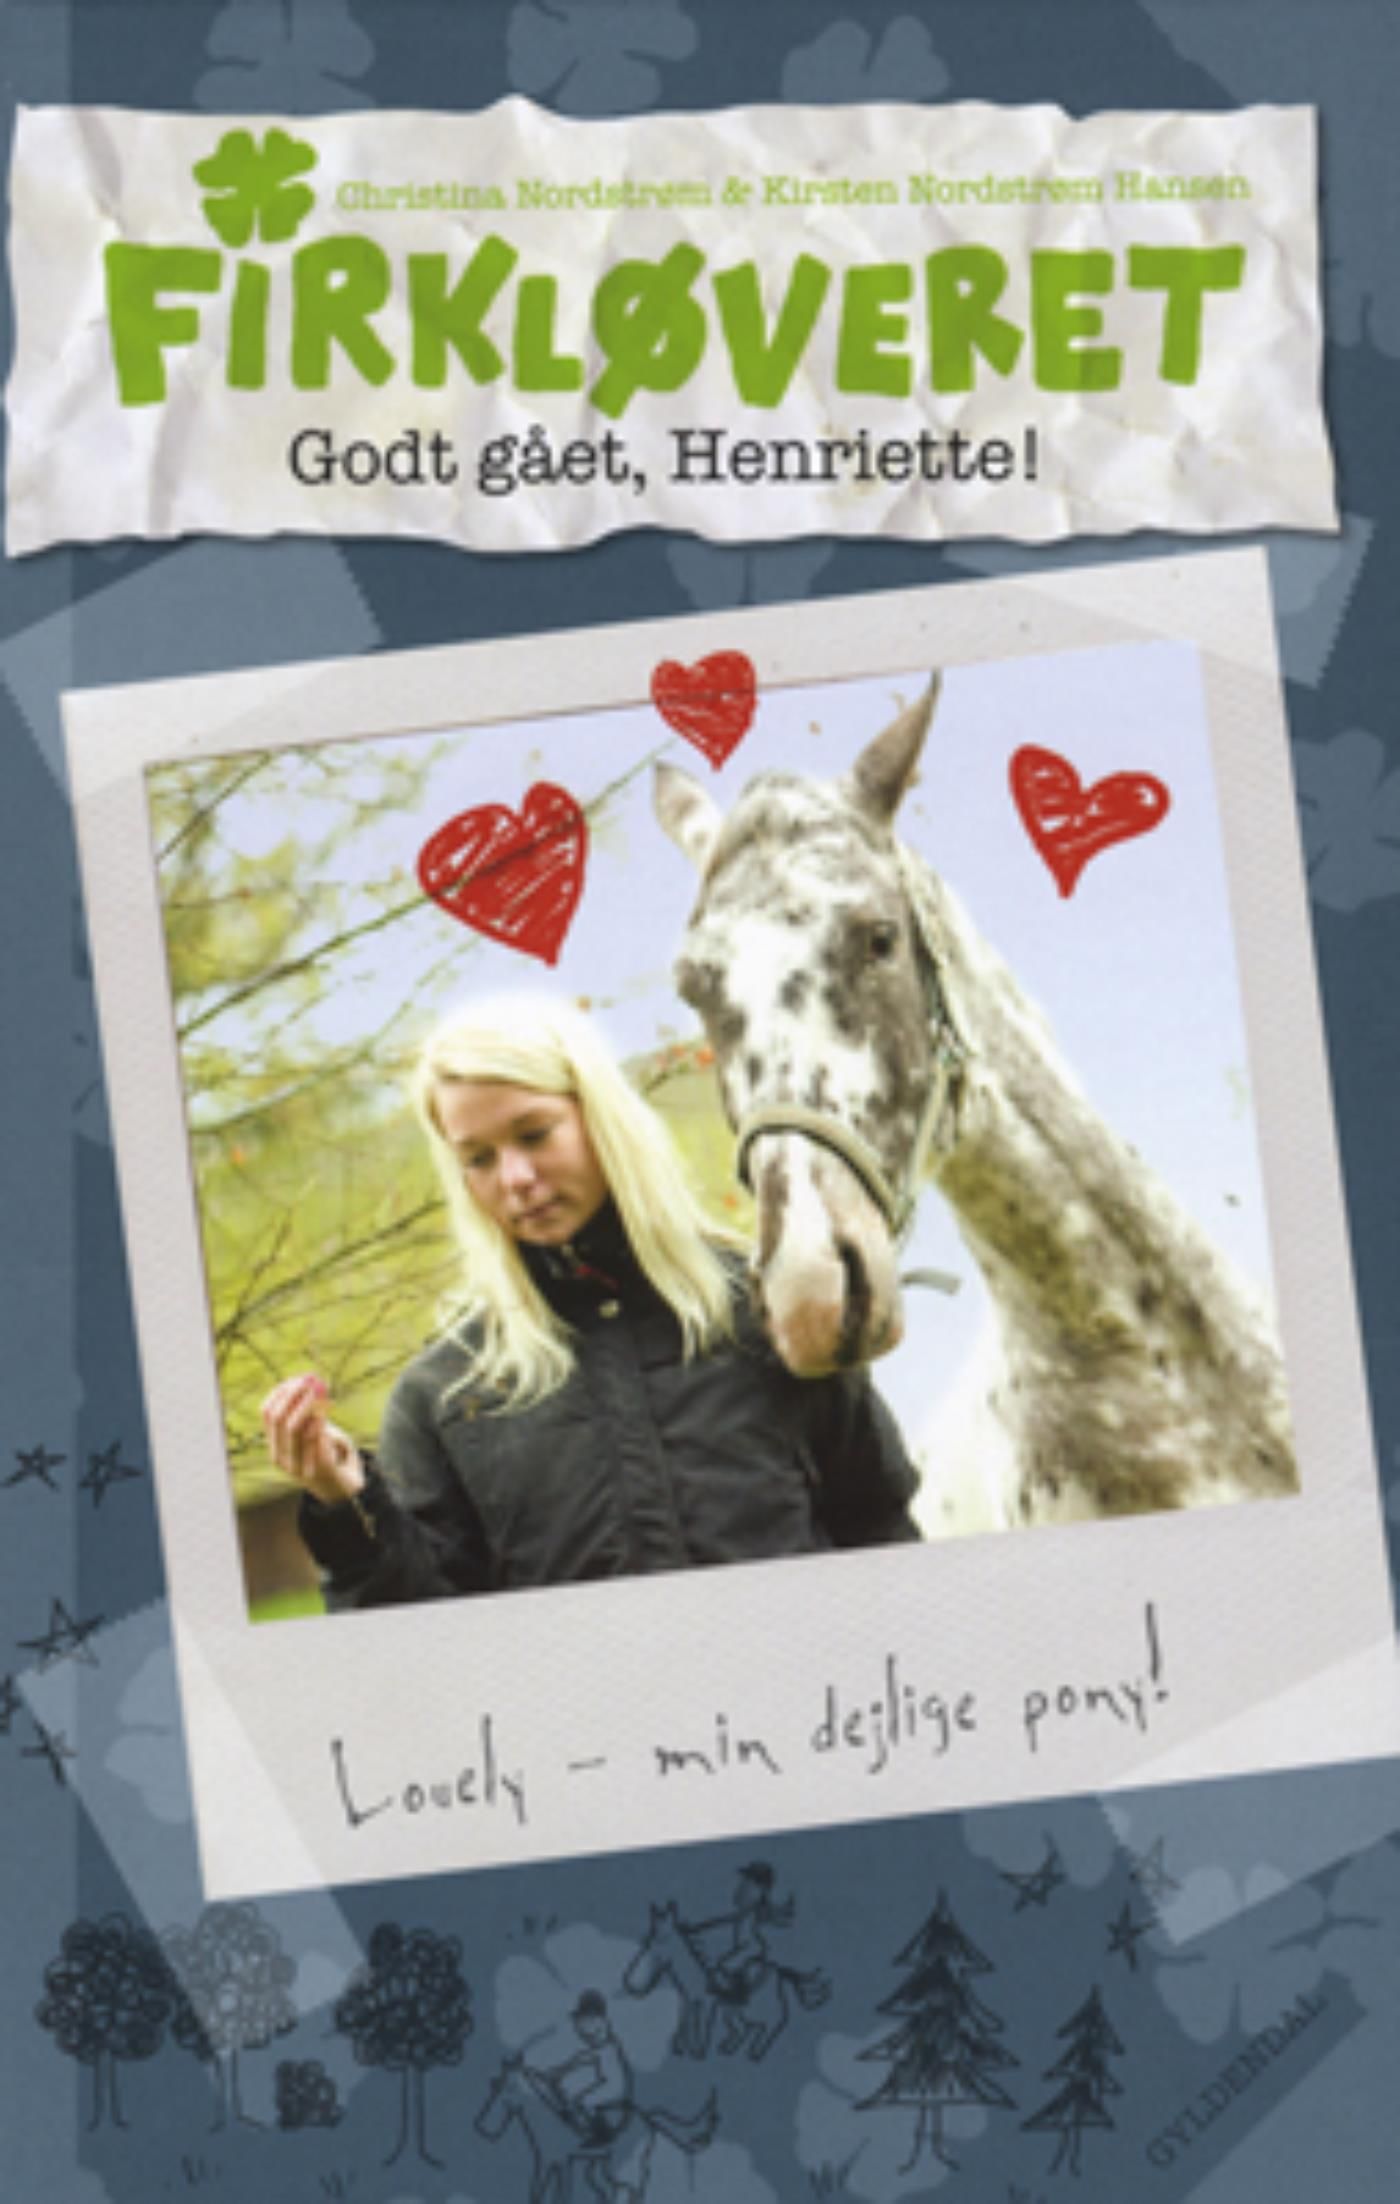 Firkløveret 3 - Godt gået, Henriette!, e-bog af Kirsten Nordstrøm Hansen, Christina Nordstrøm